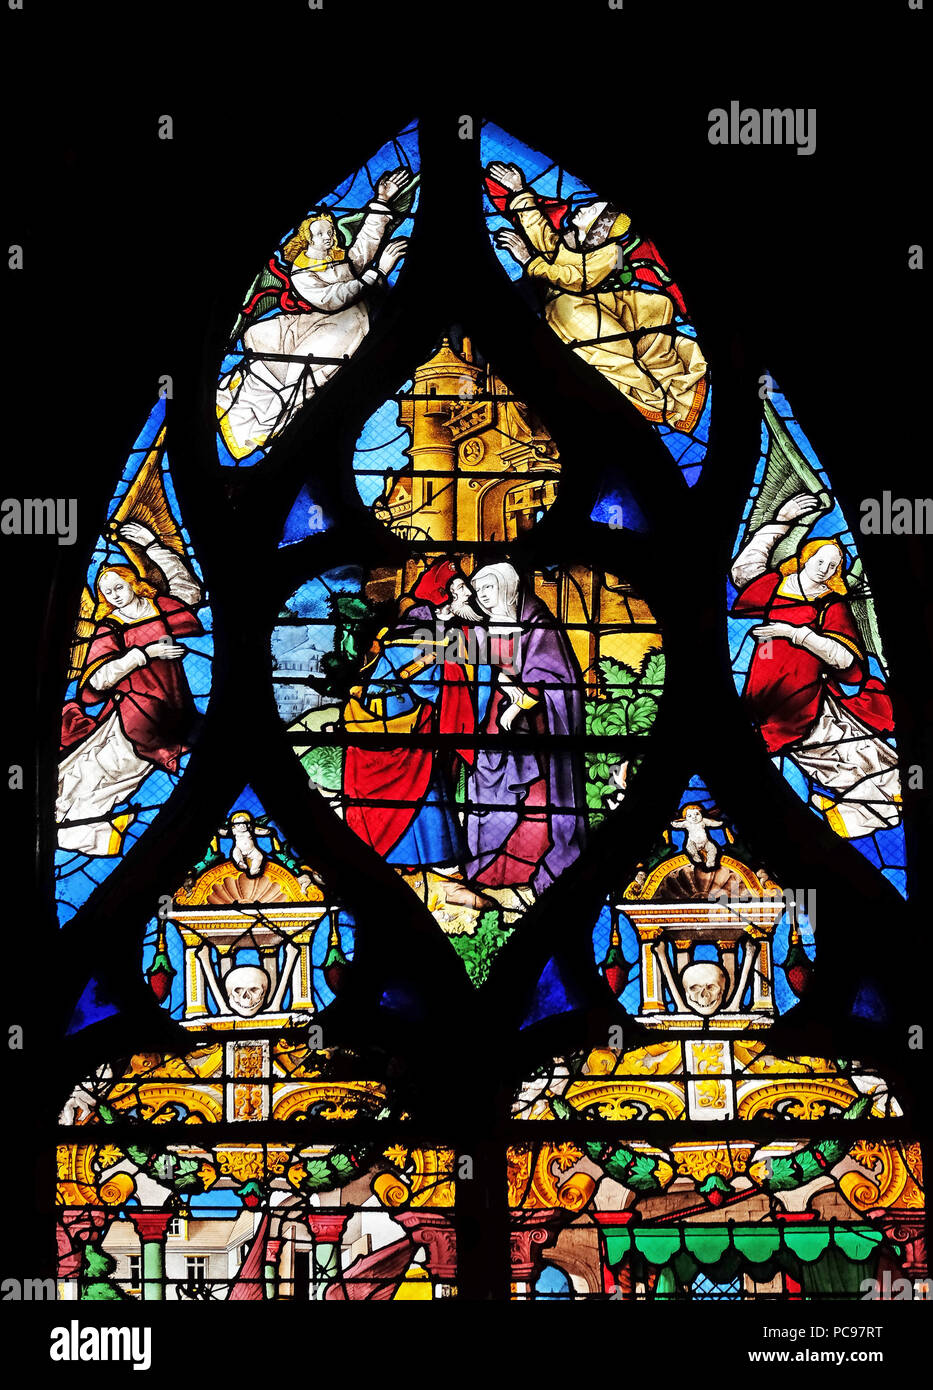 Joachim et Anne rencontre à la Porte Dorée, vitraux de la Saint Gervais et Saint Protais Église, Paris, France Banque D'Images